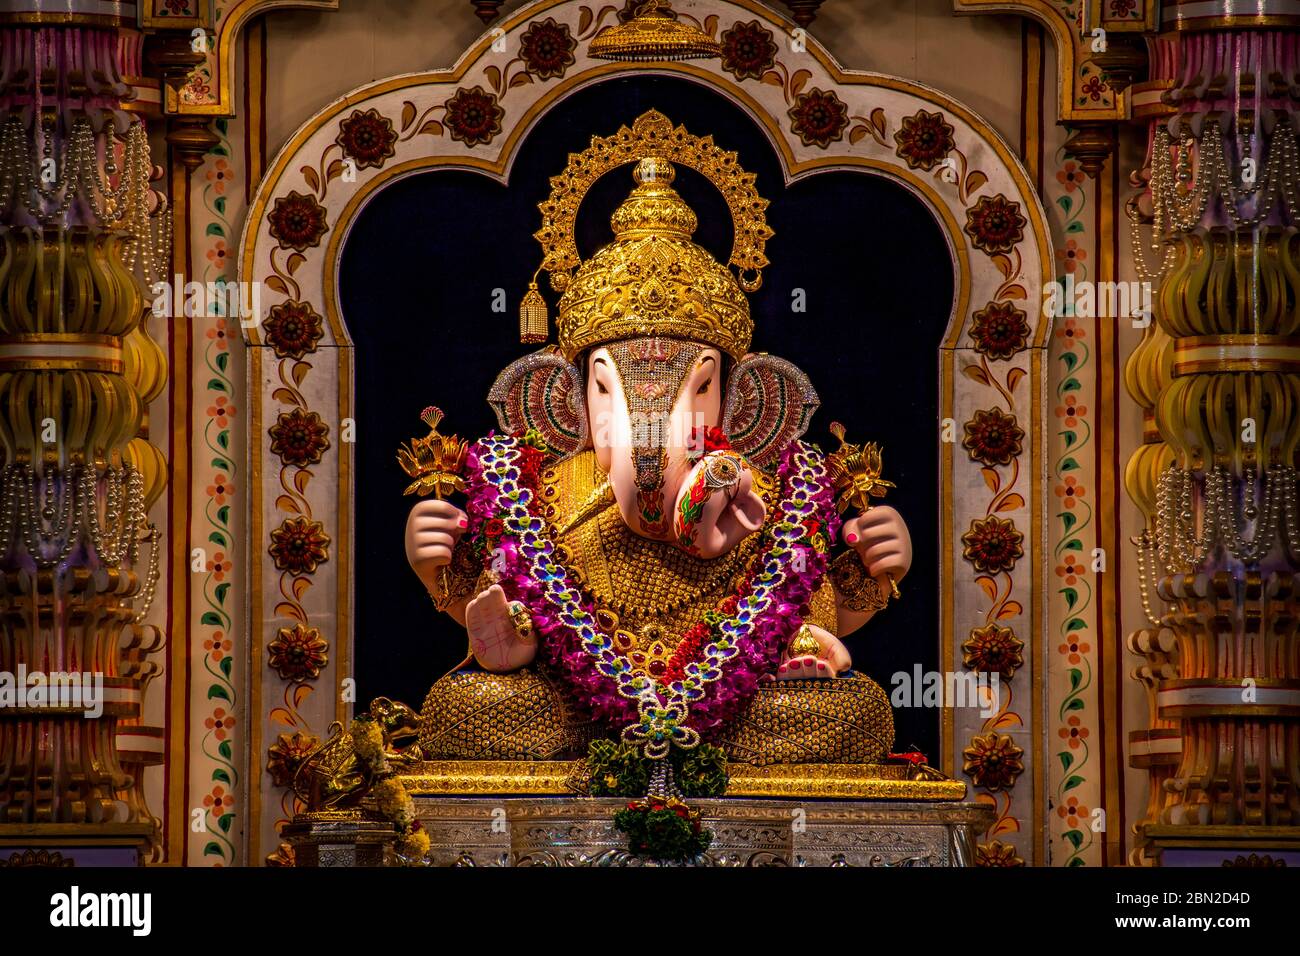 Dagdusheth Ganapati Idol à pune avec des bijoux en or et une belle décoration en 2019 Banque D'Images